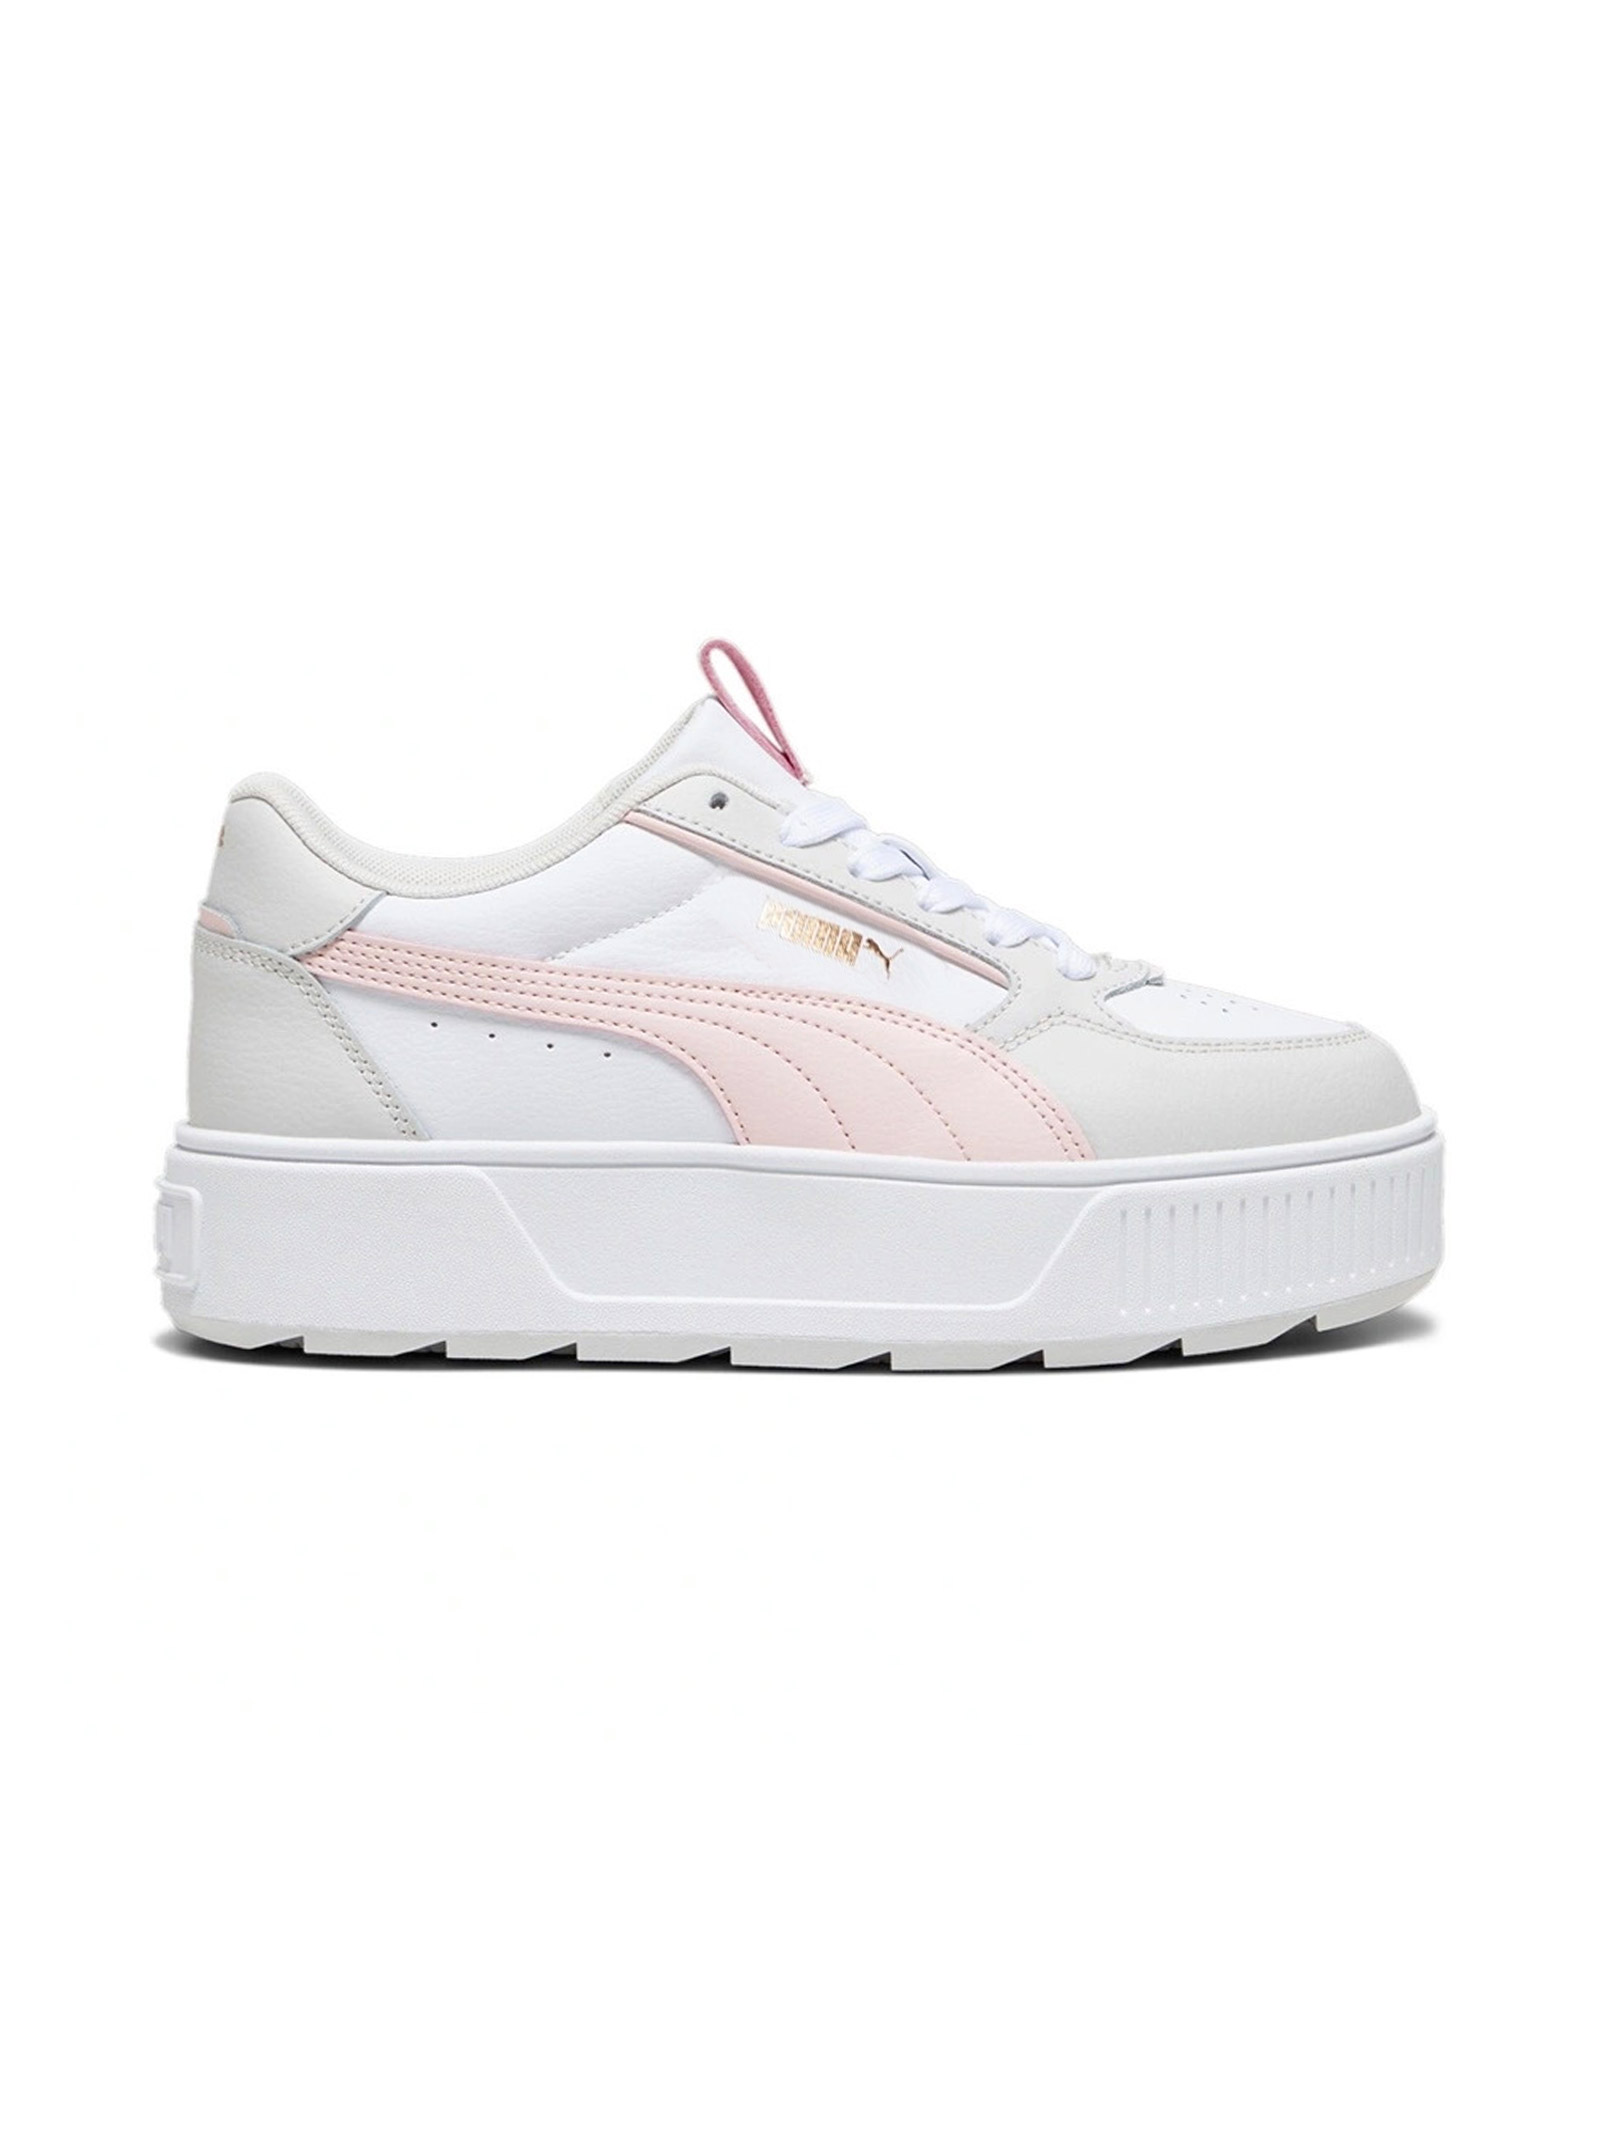 Женские кроссовки Puma Karmen Rebelle, белый/розовый женские кроссовки puma karmen rebelle белый розовый